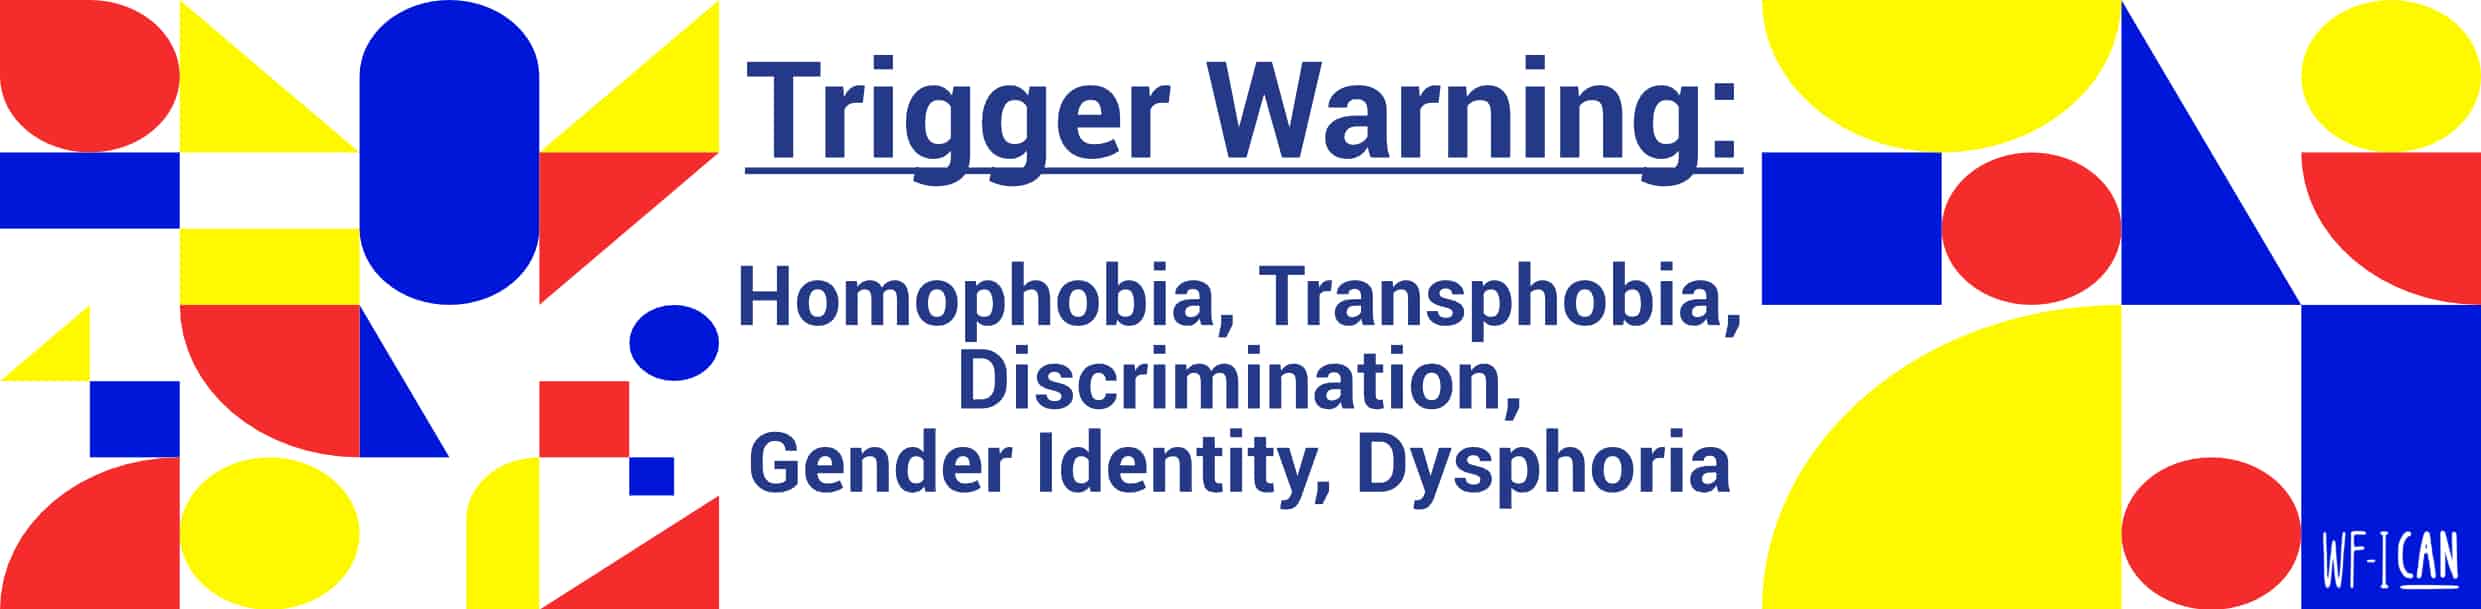 trigger warning lgbtqia+